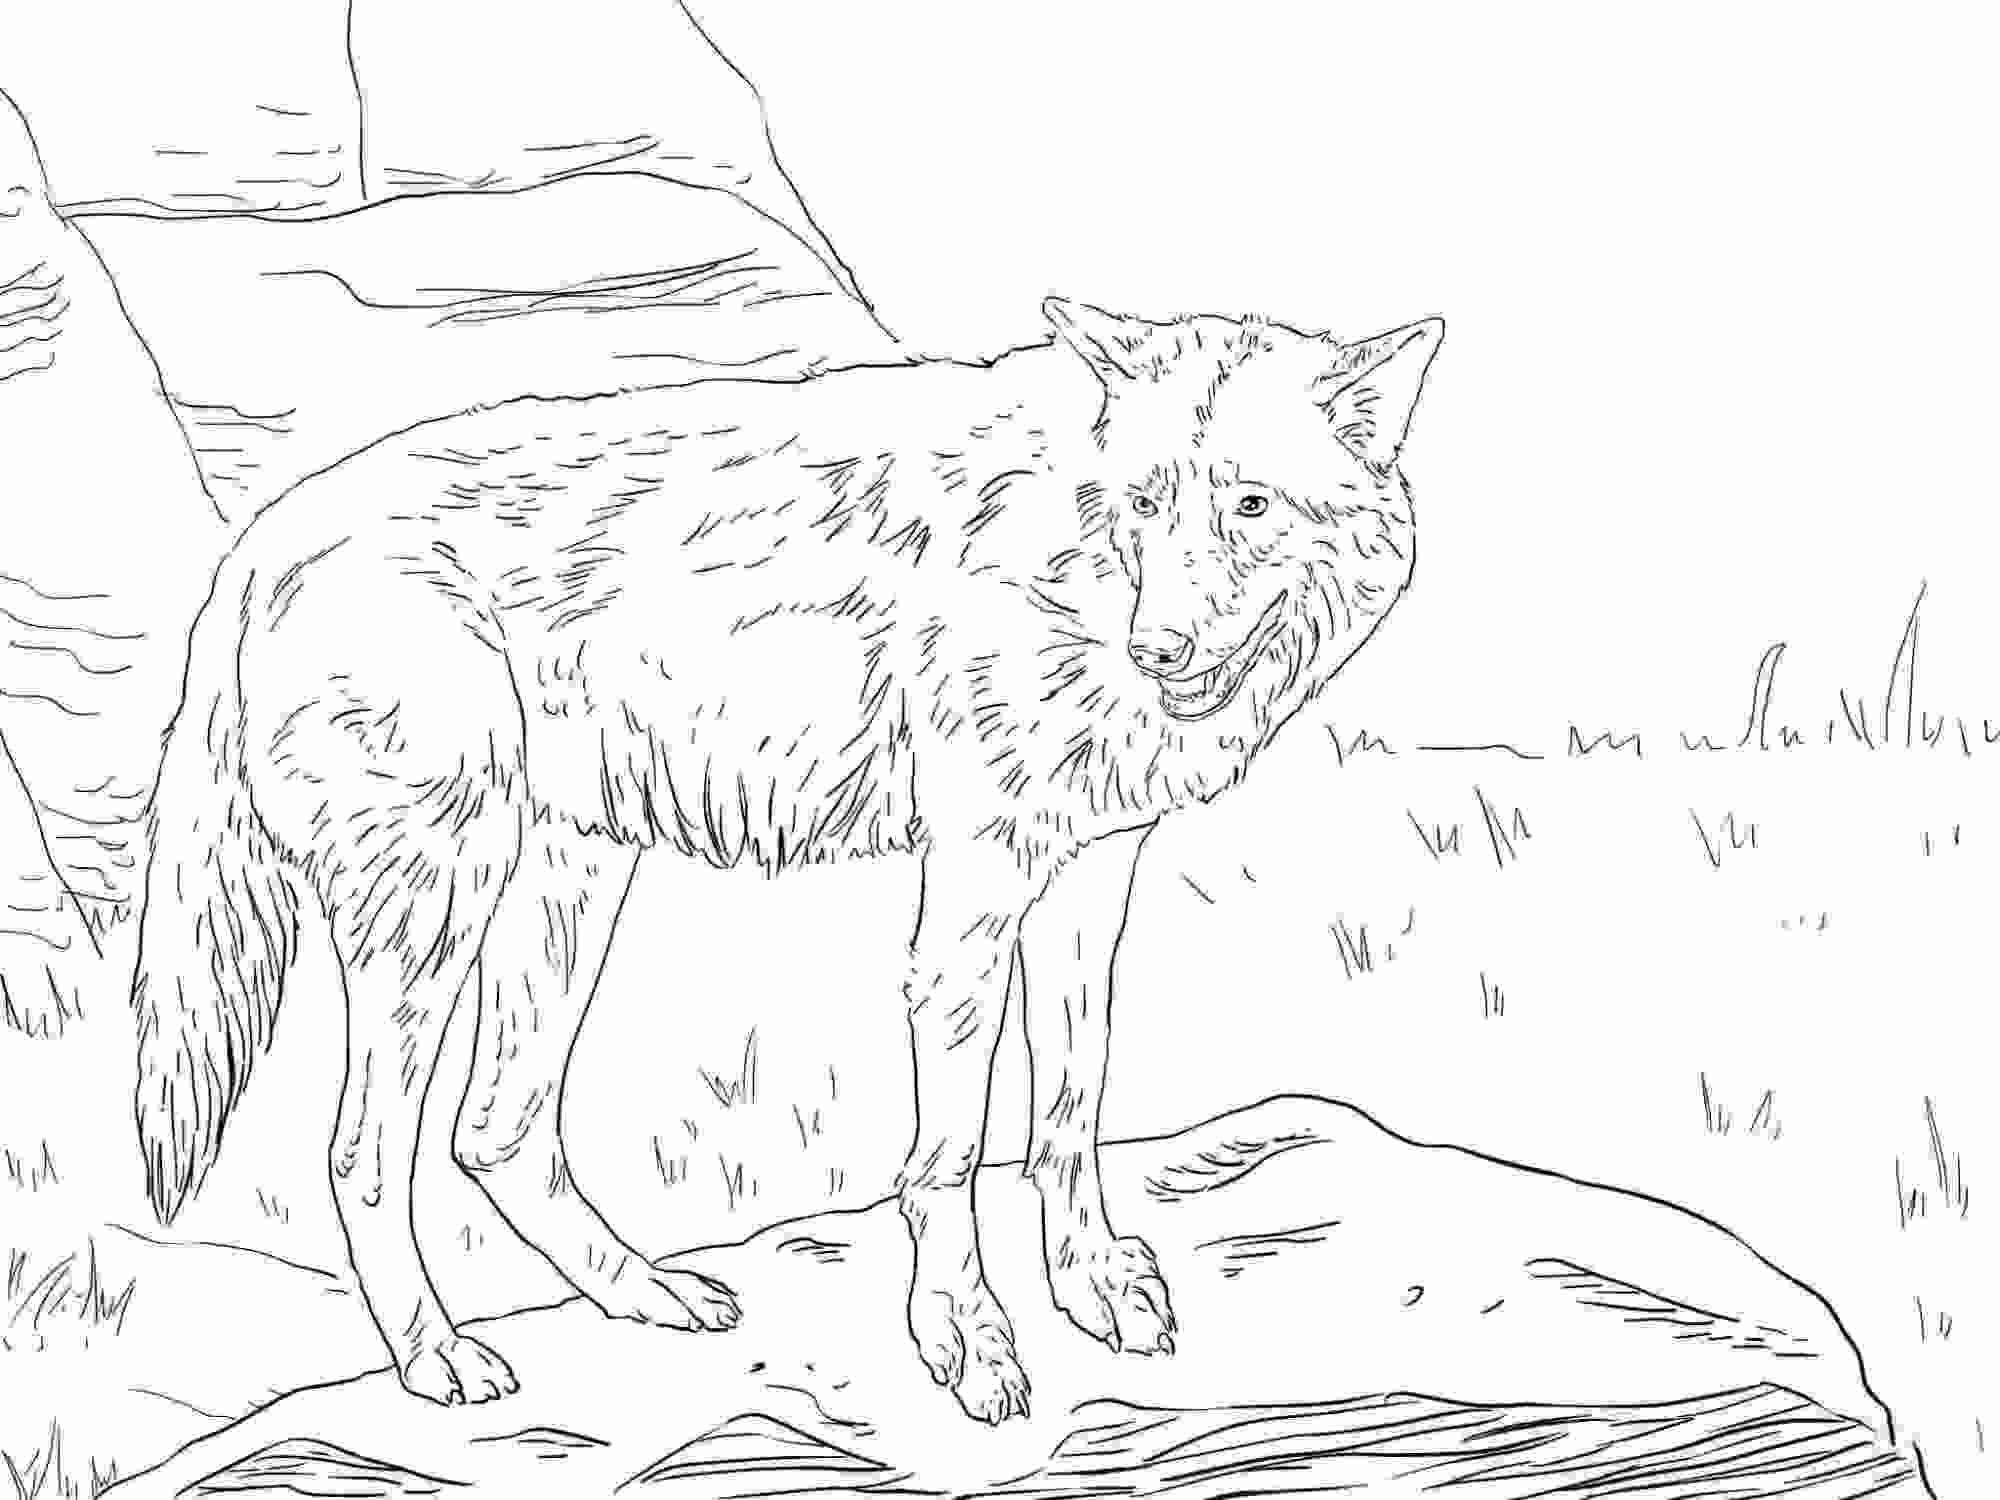 Il lupo orientale ha una coda lunga, folta, brunastra con una punta nera da lupo